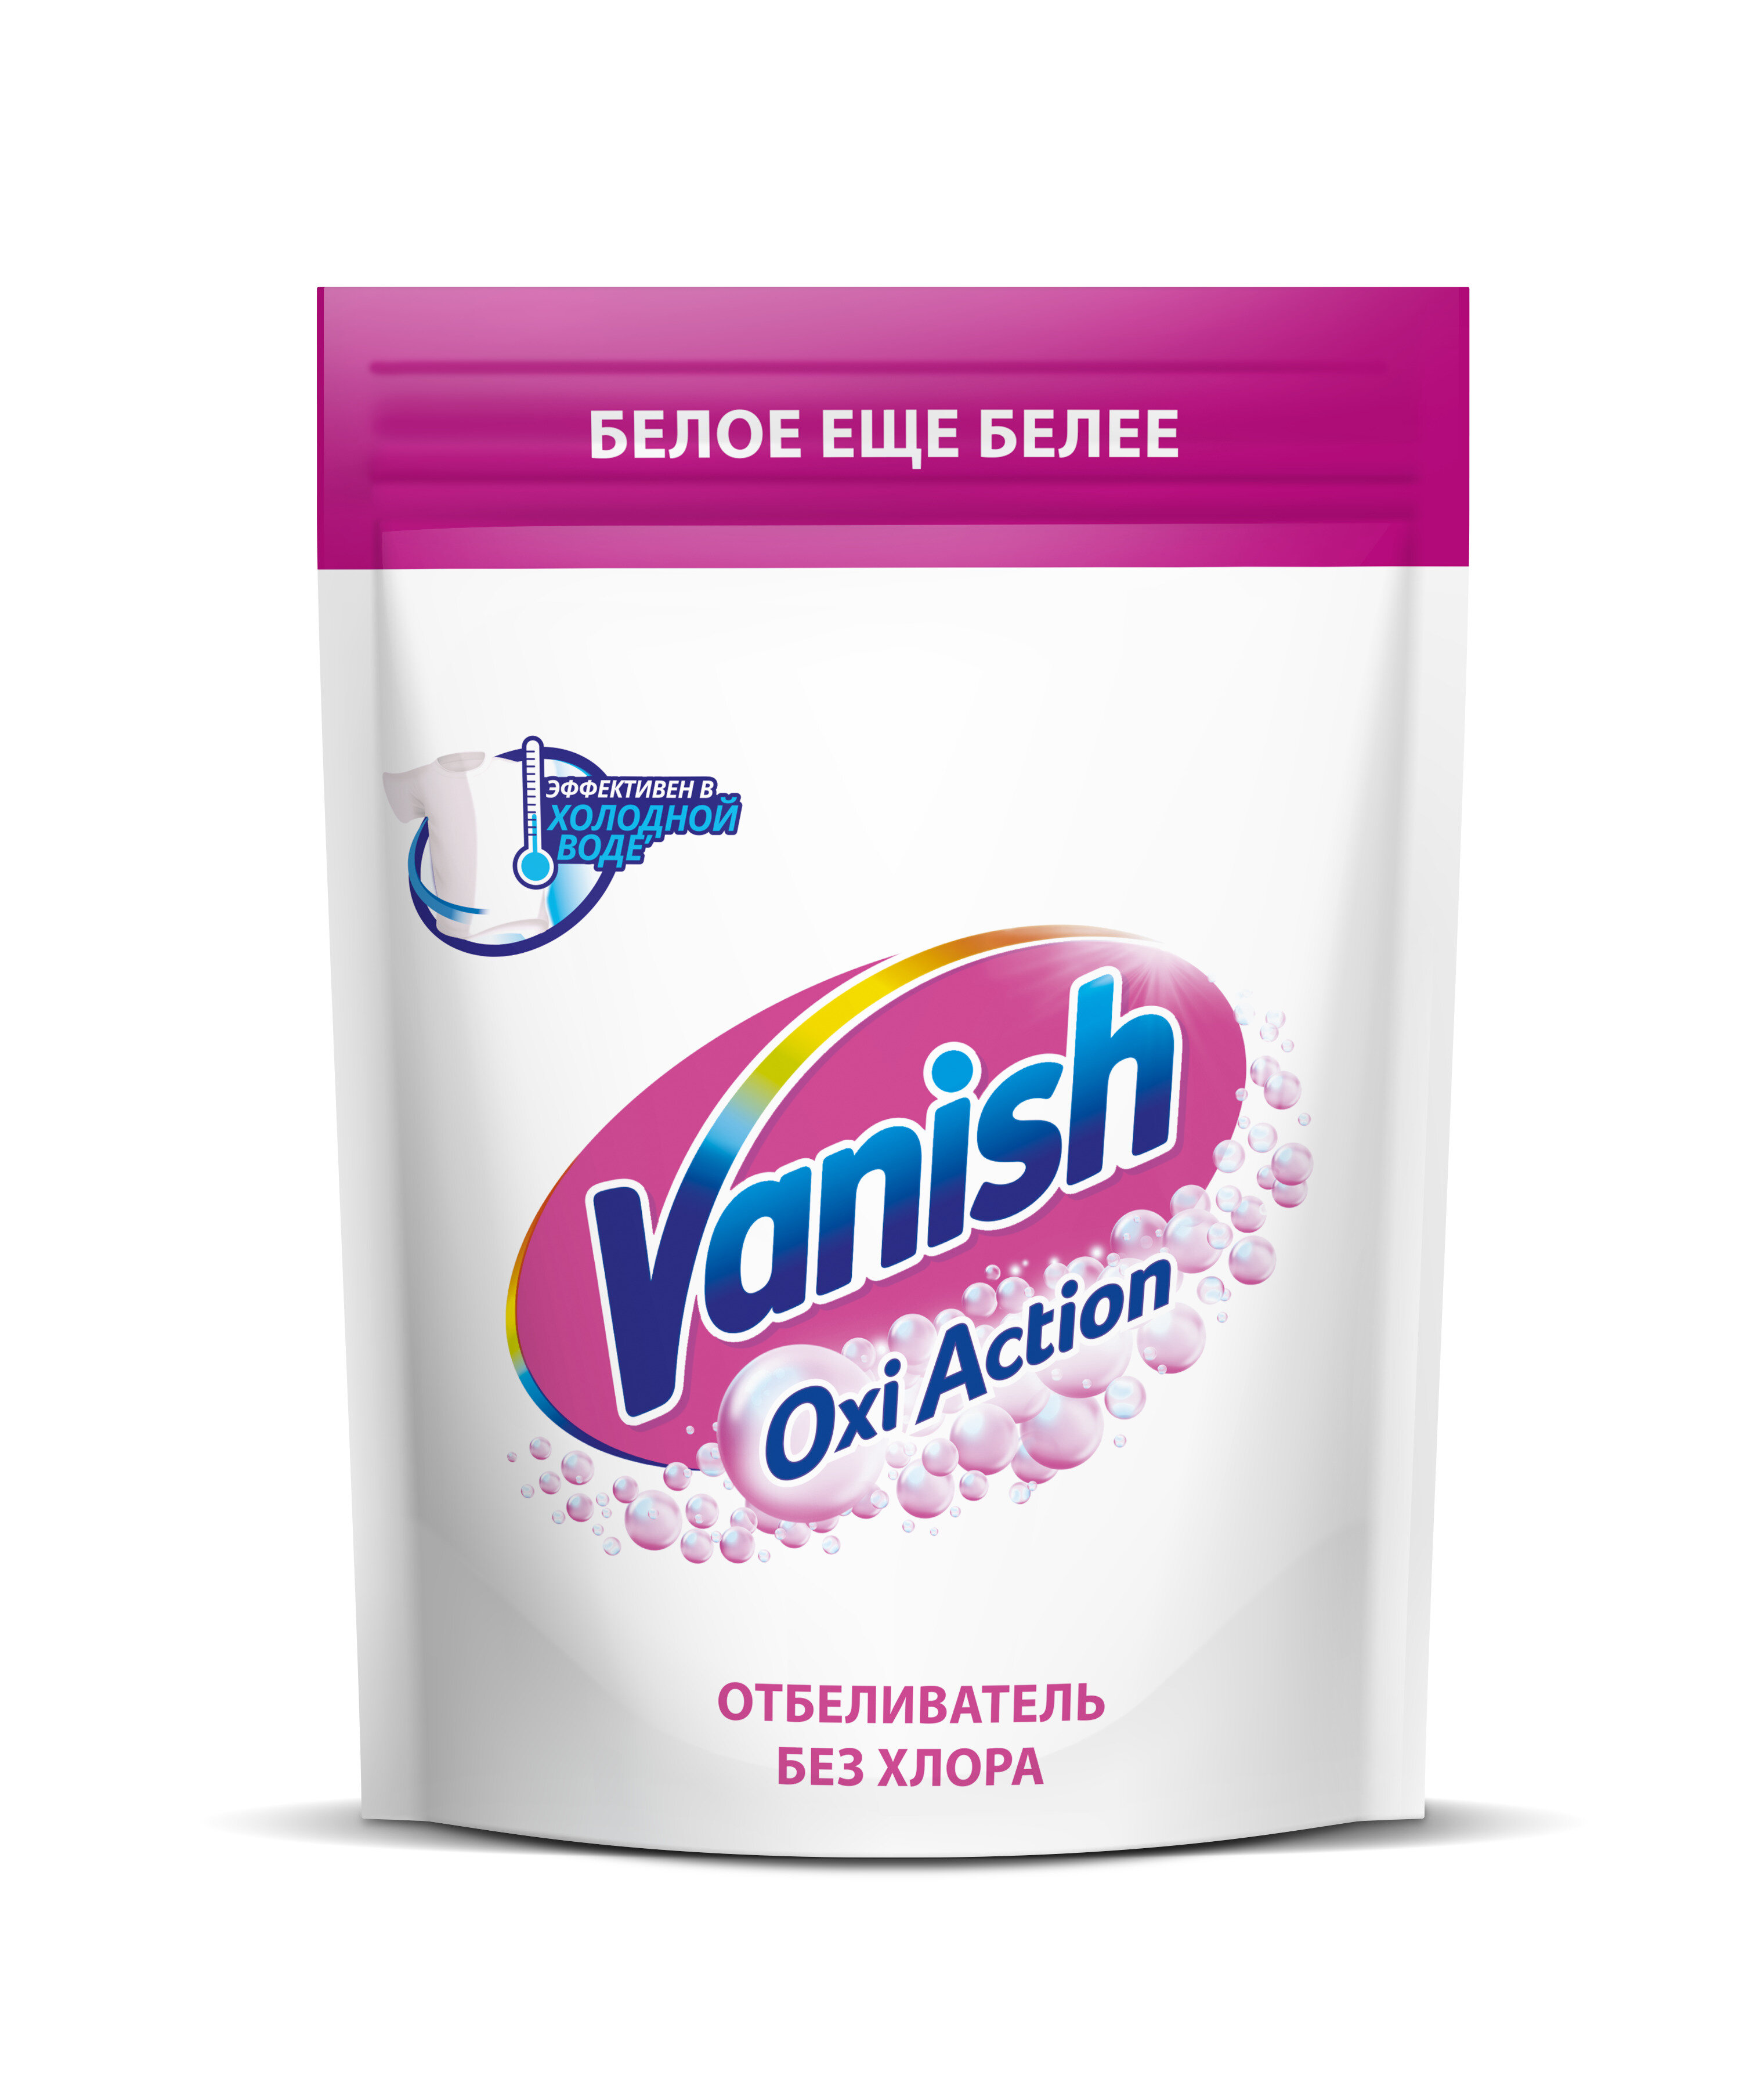 Пятновыводитель-отбеливатель для тканей Vanish, Oxi Action, кристальная белизна, порошок, 250 г.